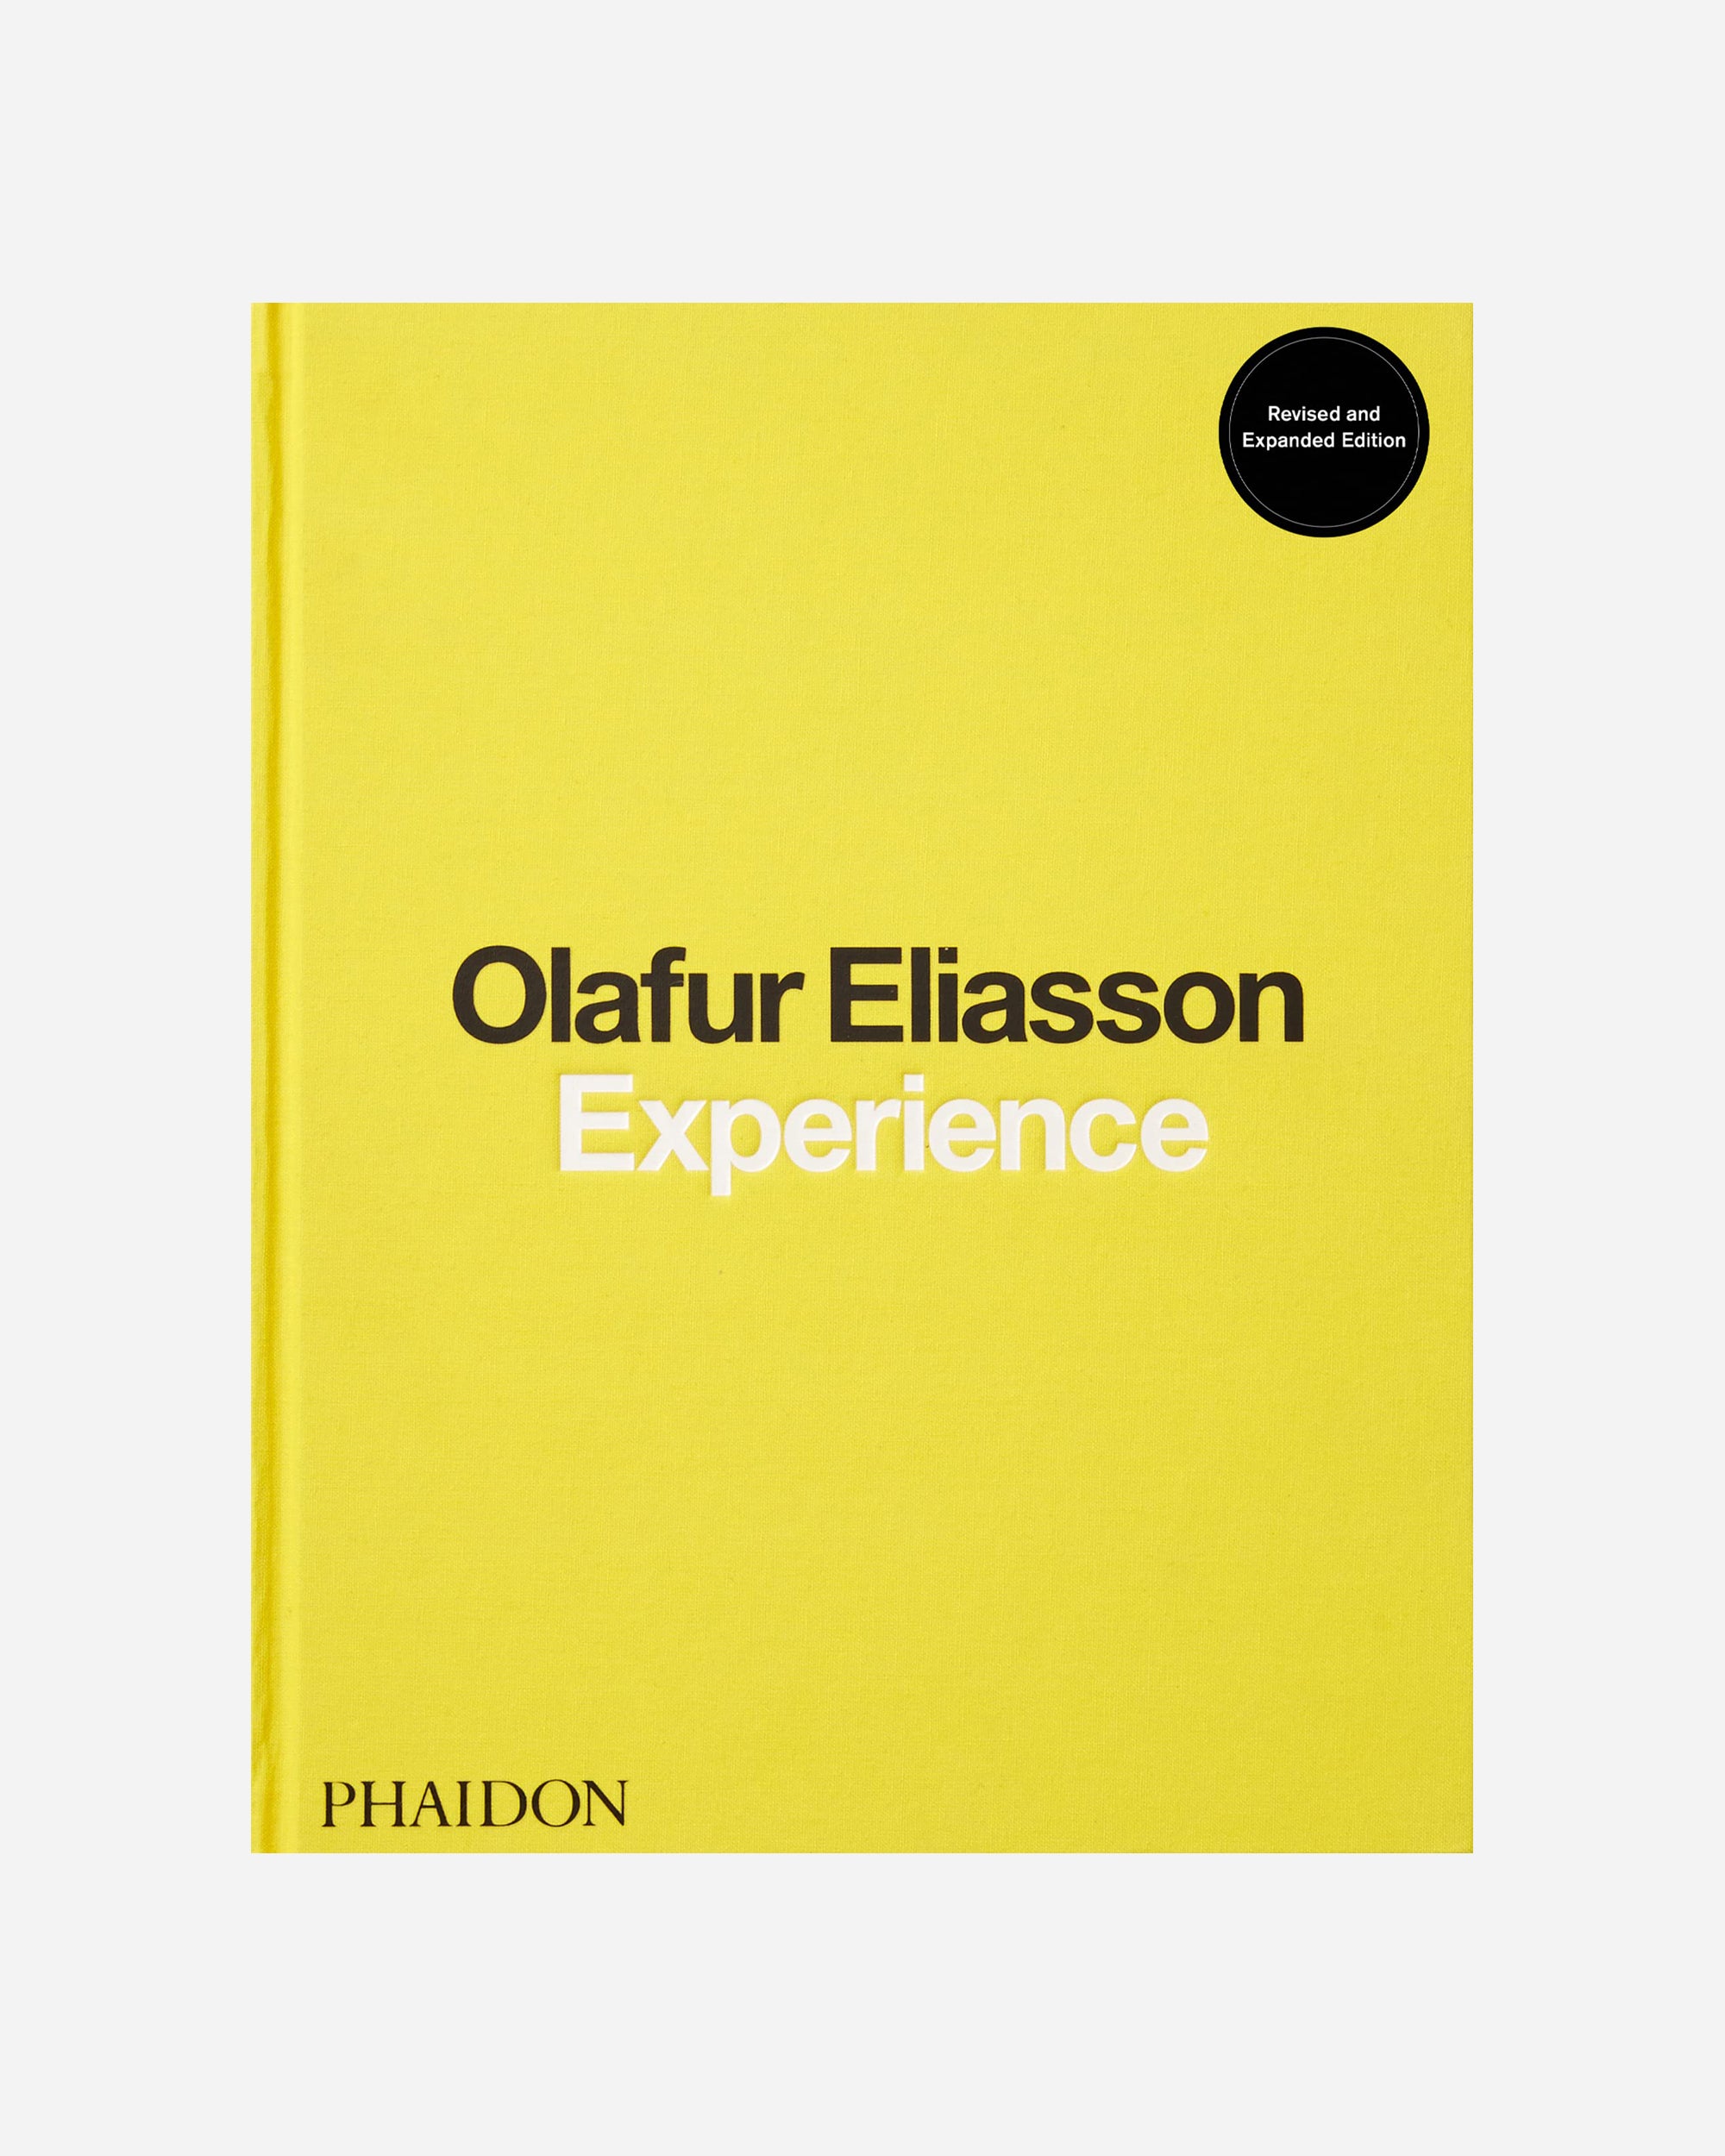 Olafur Eliasson, Experience